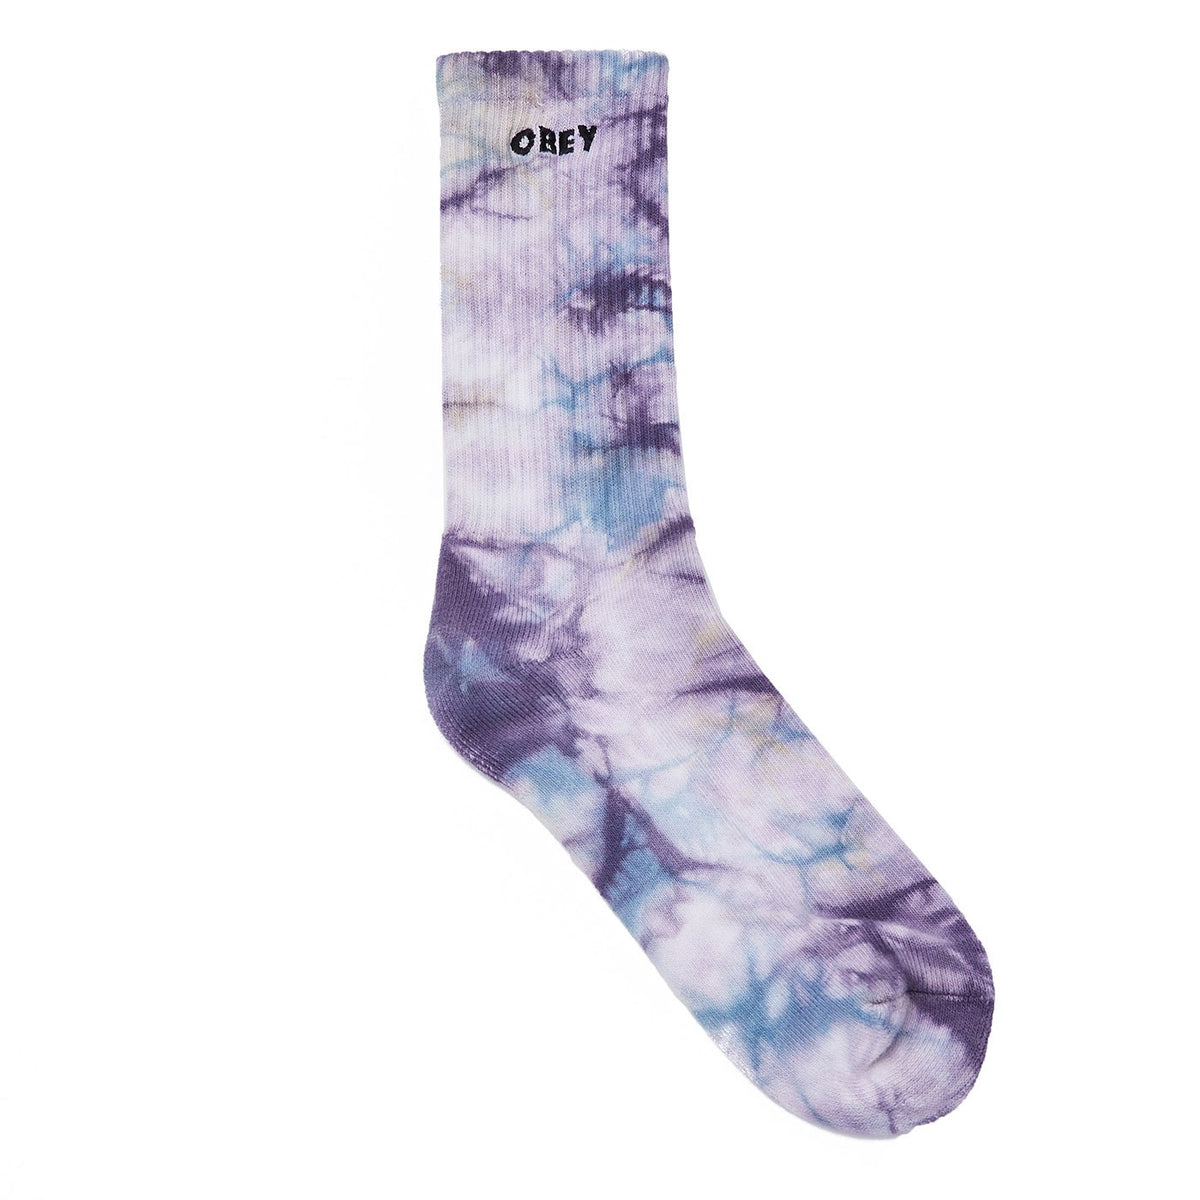 OBEY - Mountain Men's Socks, Purple Nitro Multi